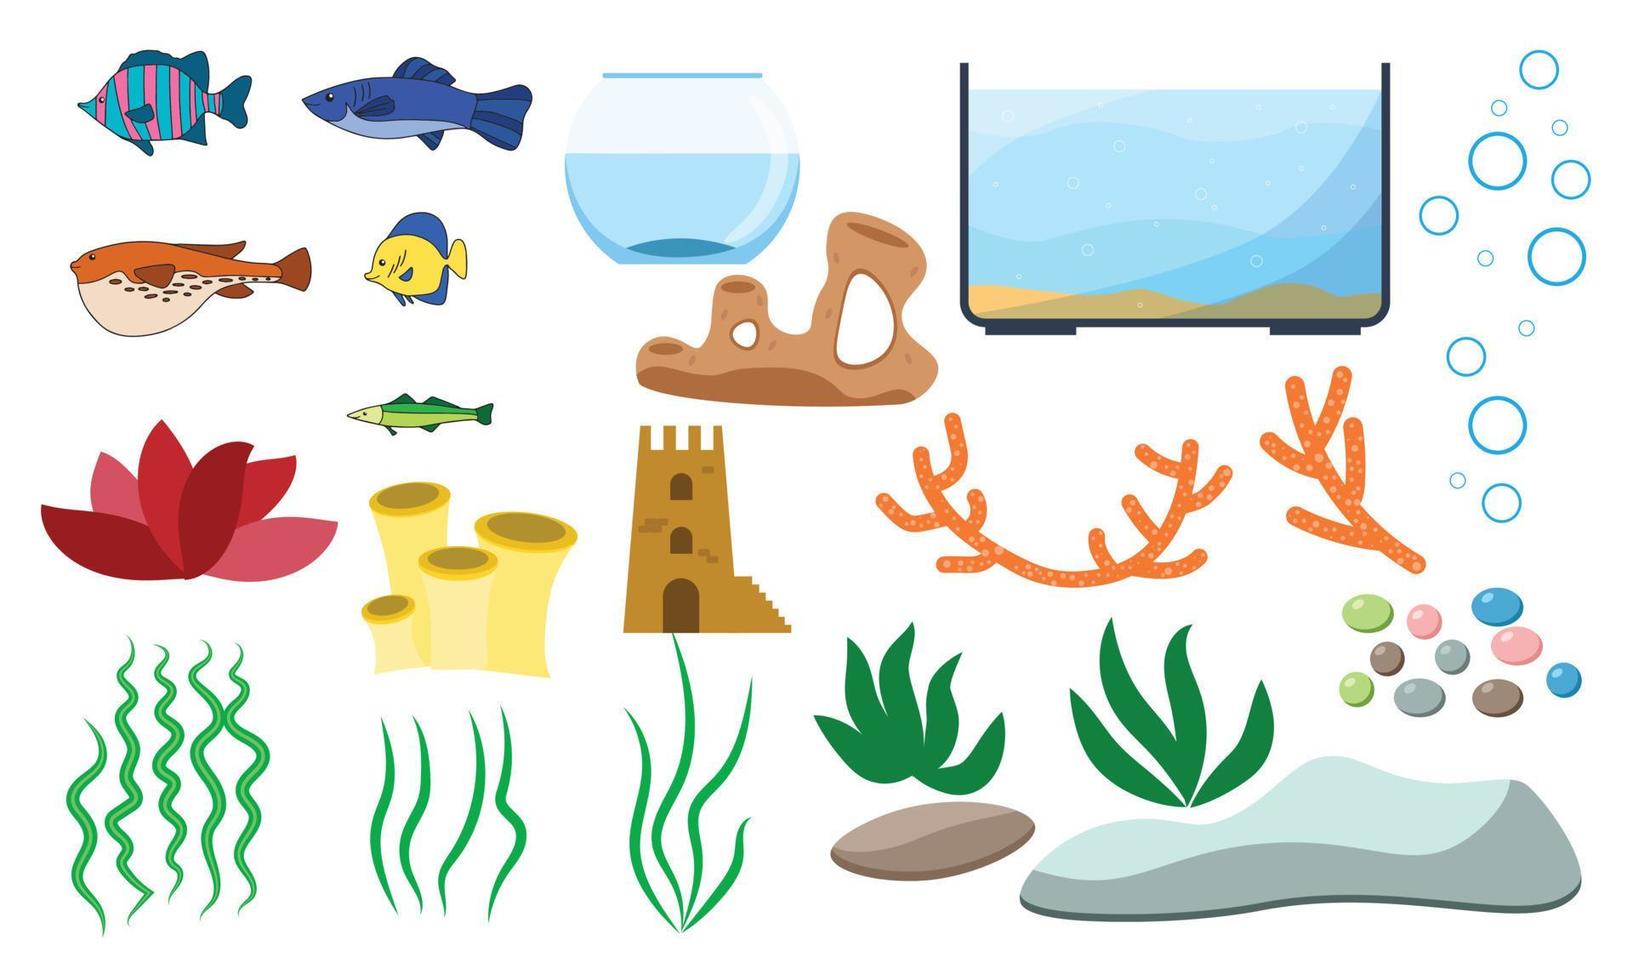 elementos do vetor subaquático do aquário isolados no fundo branco. desenho de aquarística conjunto com peixes de aquário pedras algas conchas e tanques de aquário de diferentes formas.